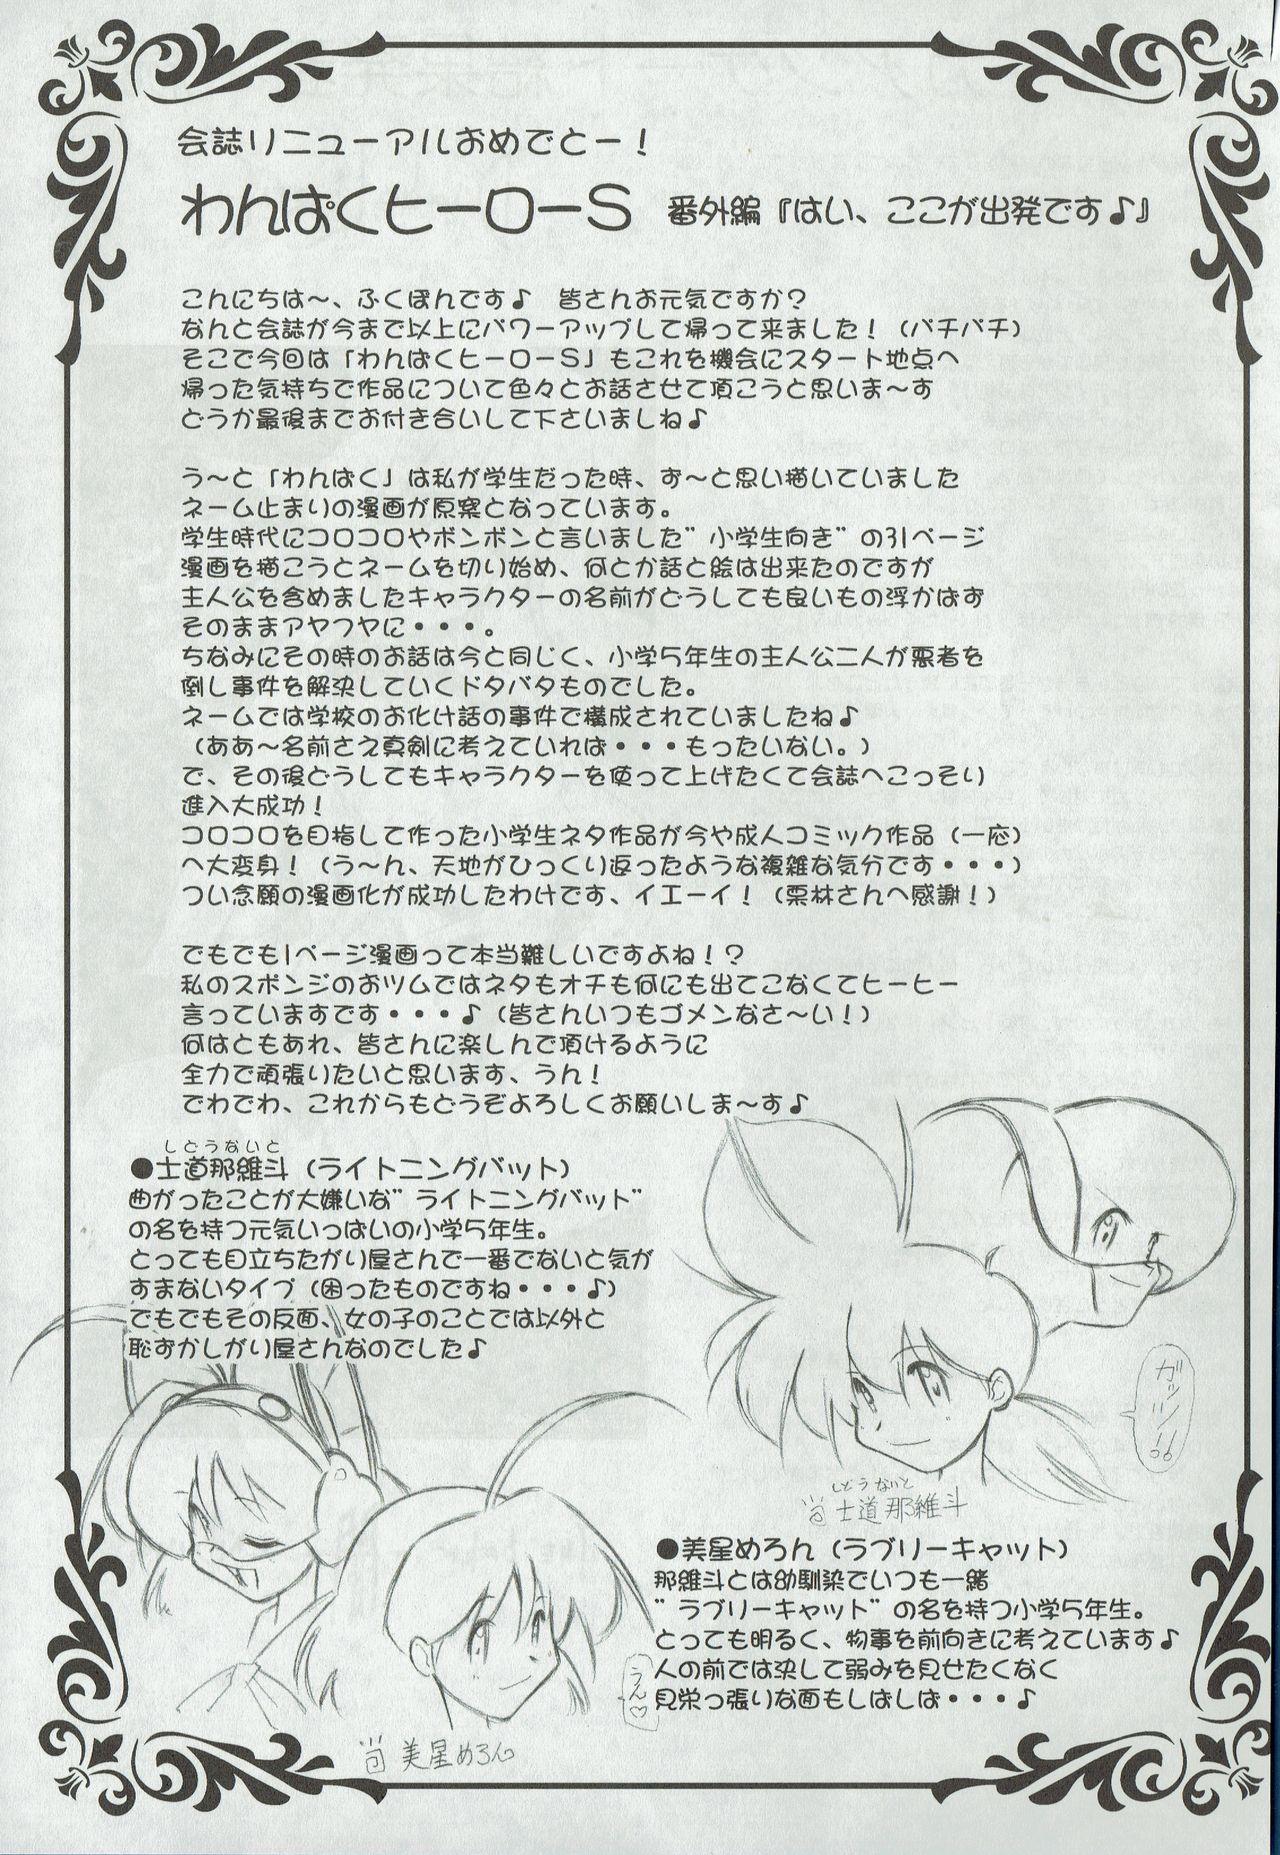 Arisu no Denchi Bakudan Vol. 01 7